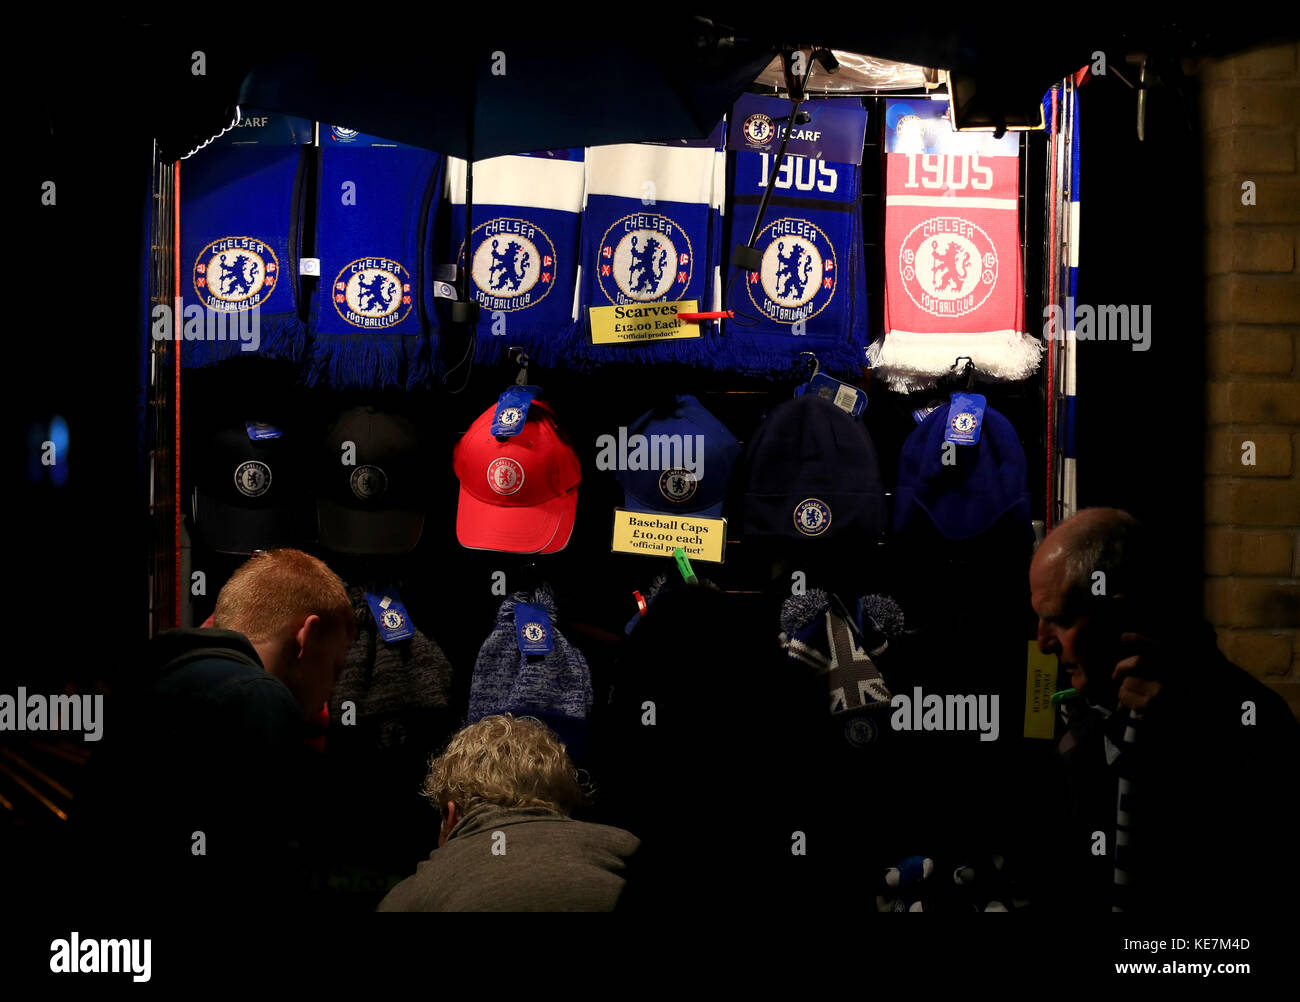 Marchandise en vente avant le match du groupe C de la Ligue des champions de l'UEFA à Stamford Bridge, Londres. Banque D'Images